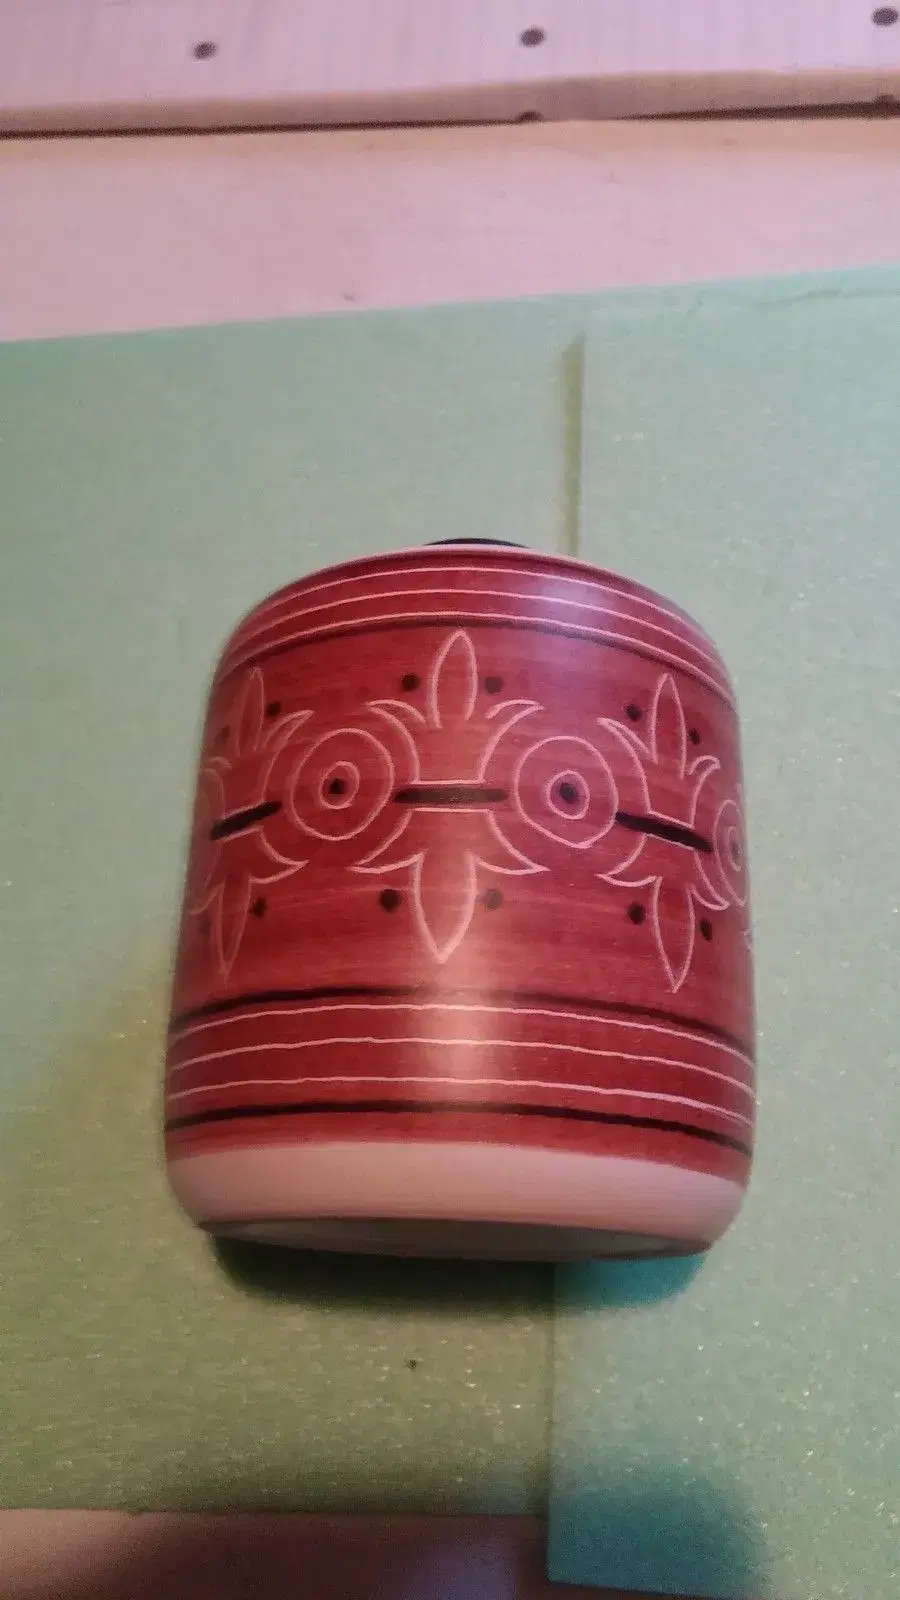 søholm vase